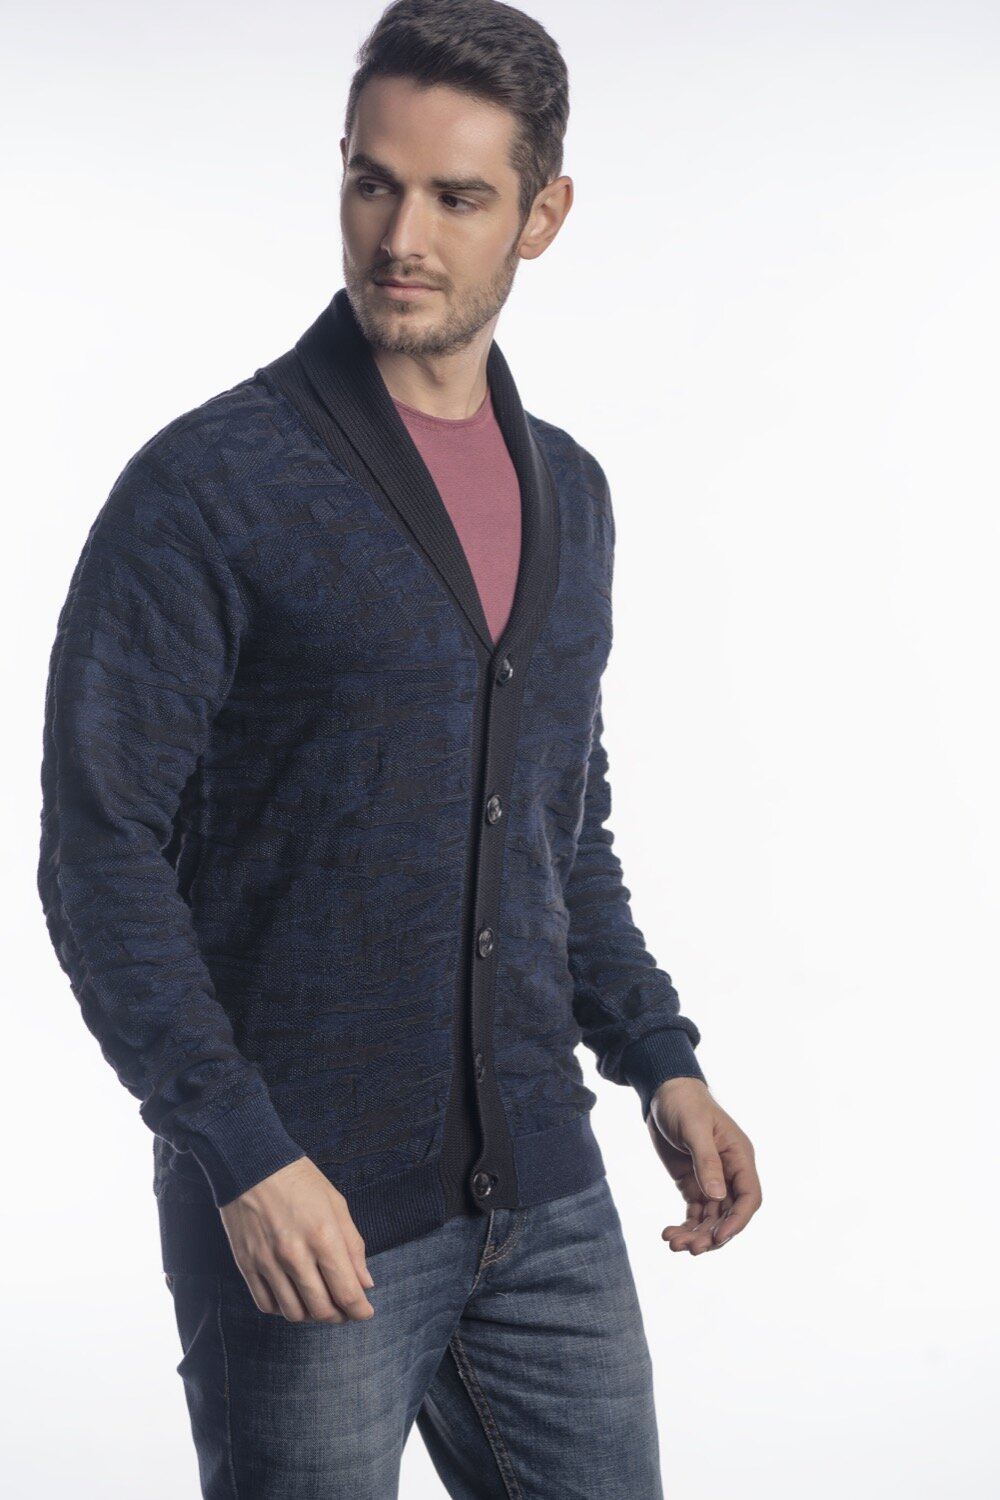 Men's Wear — Linear Design - Knitwear Manufacturer, Sweater ...